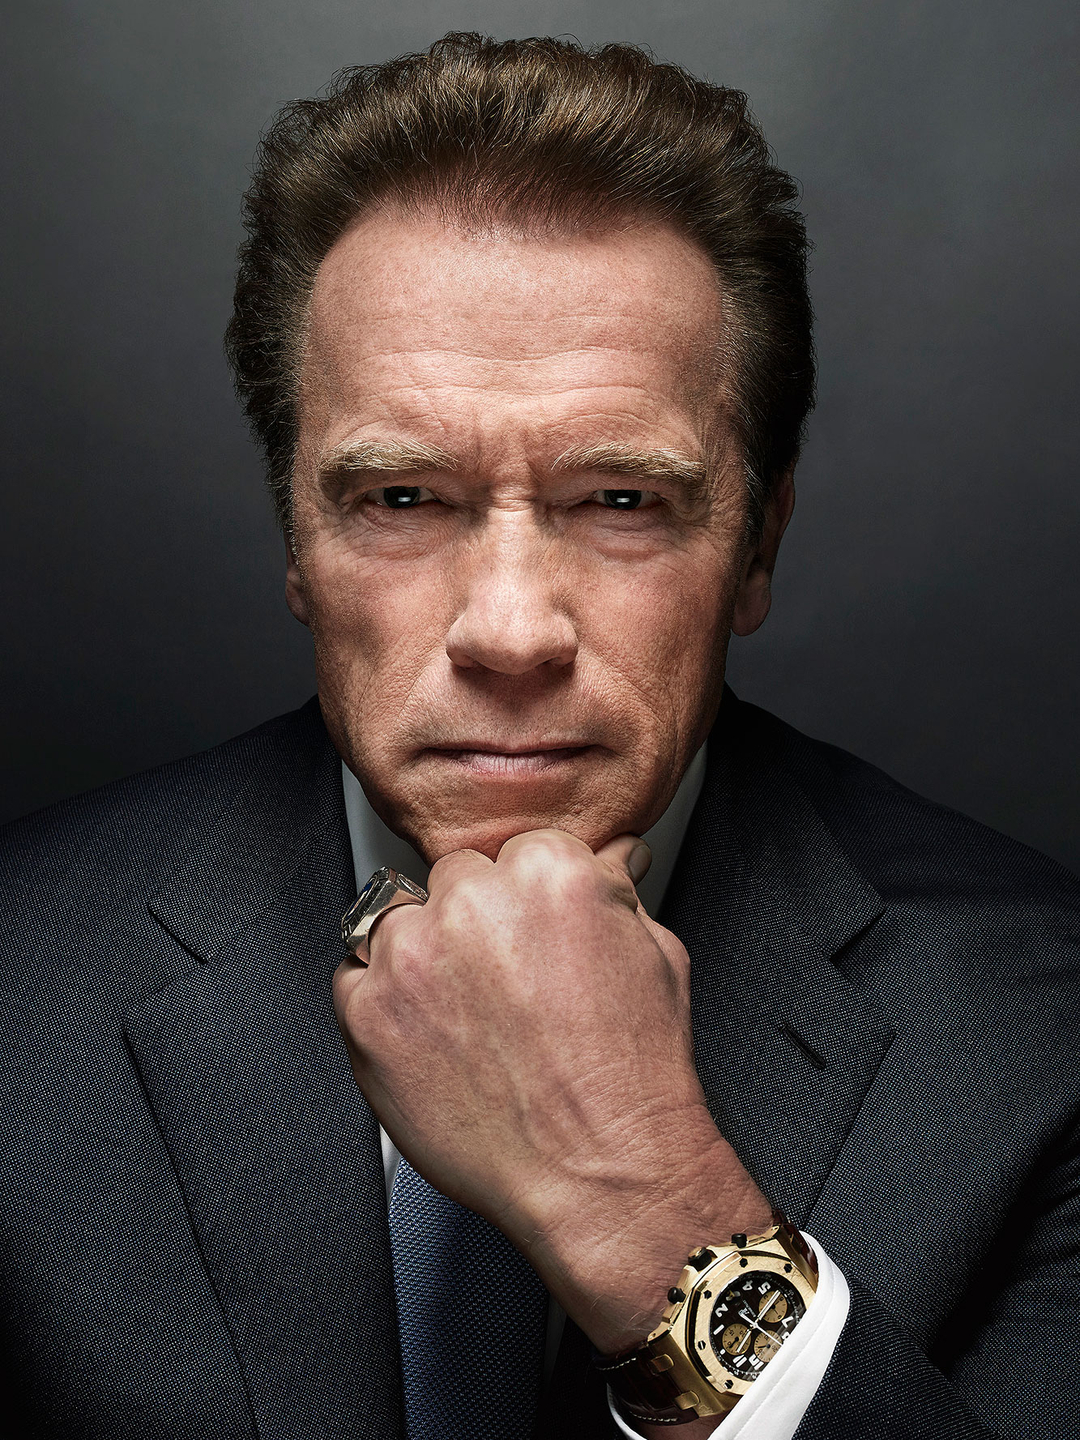 Arnold Schwarzenegger in his teens